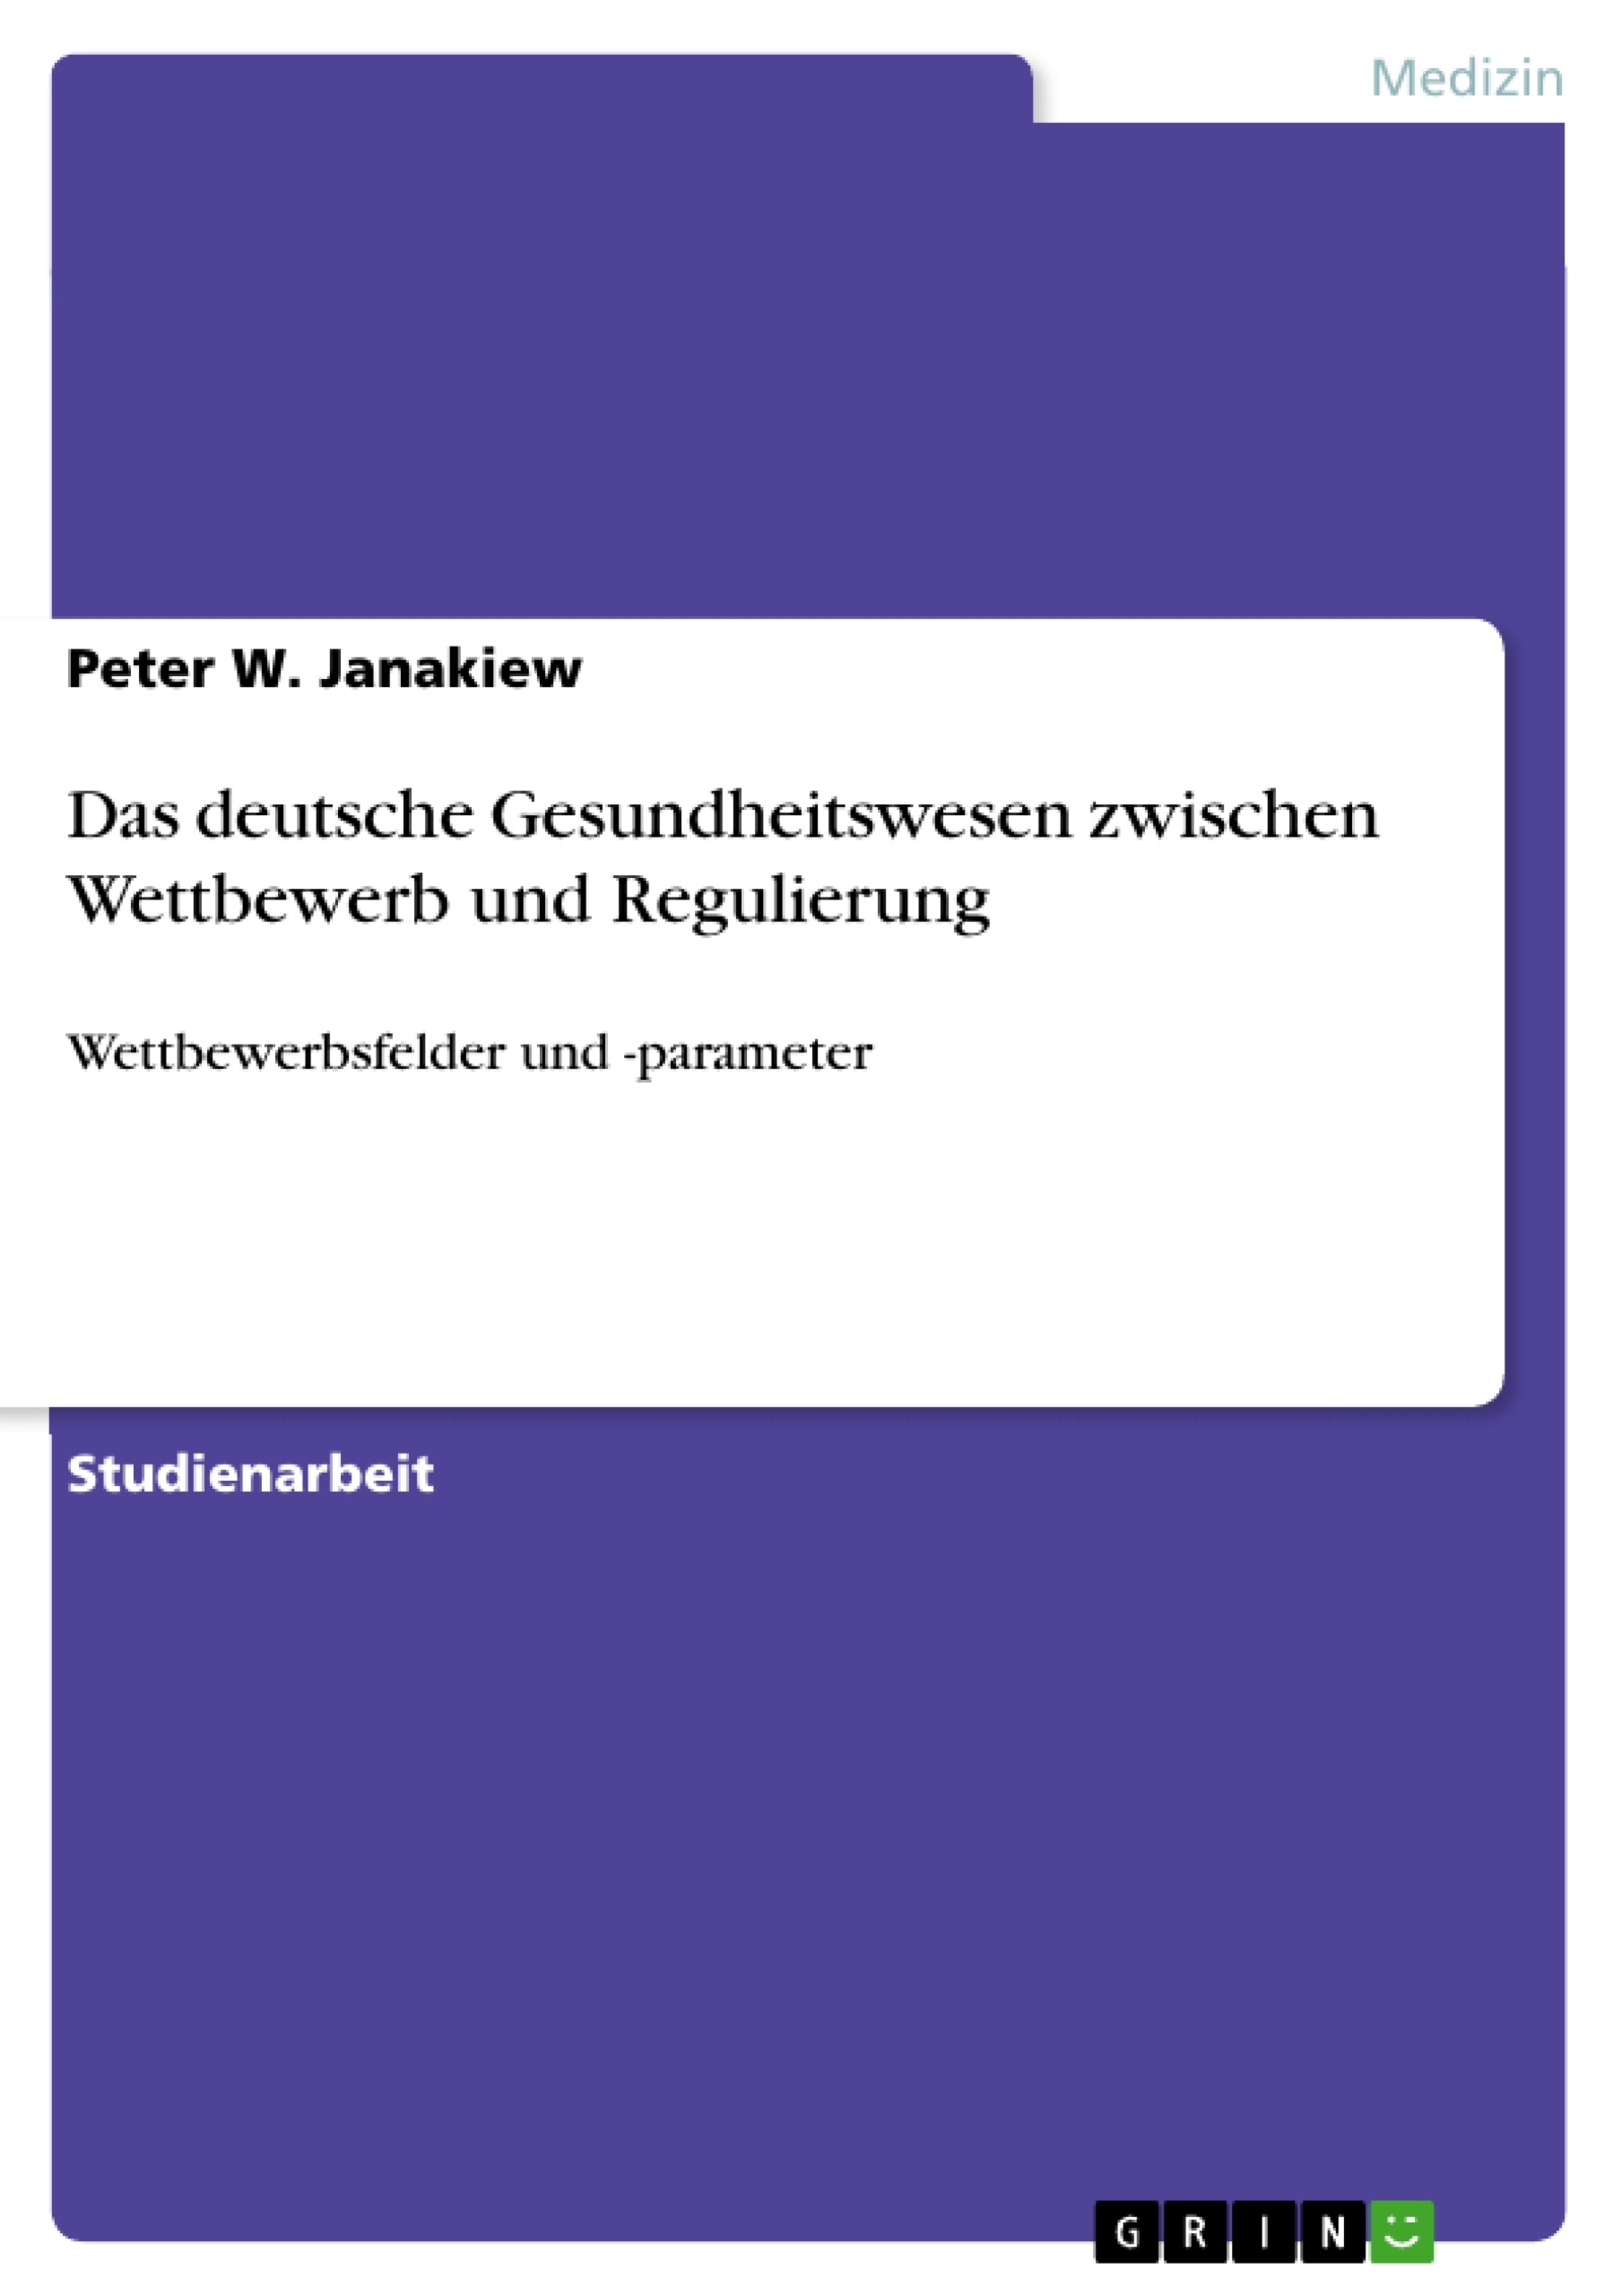 Título: Das deutsche Gesundheitswesen zwischen Wettbewerb und Regulierung